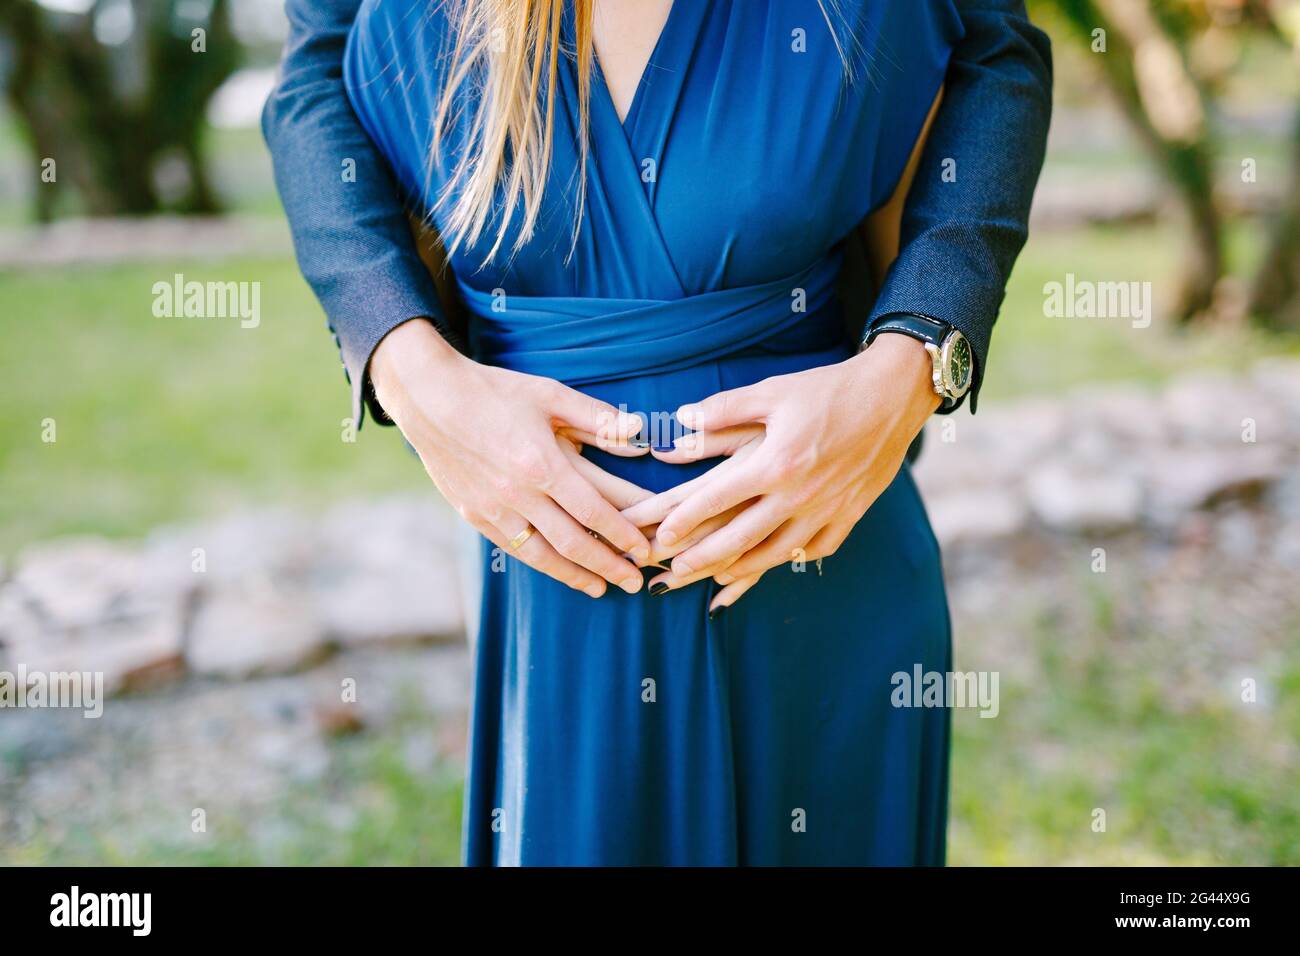 Die Hände des Mannes umarmen sich hinter dem schwanger Bauch der Frau In einem blauen Kleid Stockfoto